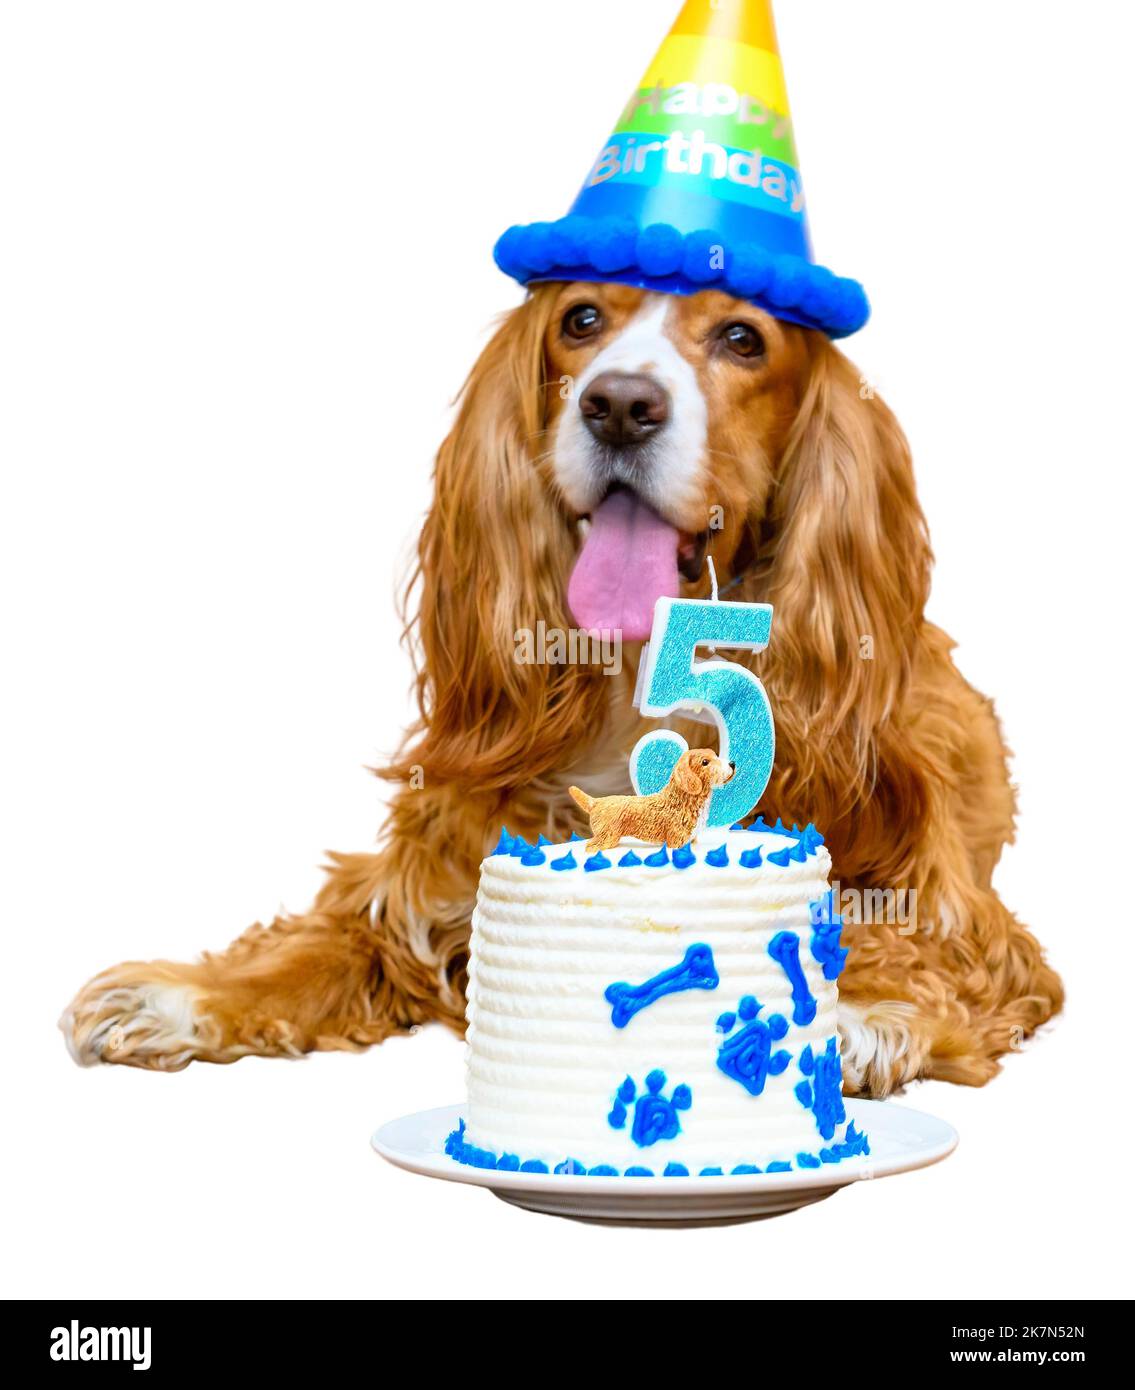 Coqueta mascota de perro spaniel festejando su cumpleaños de cinco años. Ninguna gente Foto de stock